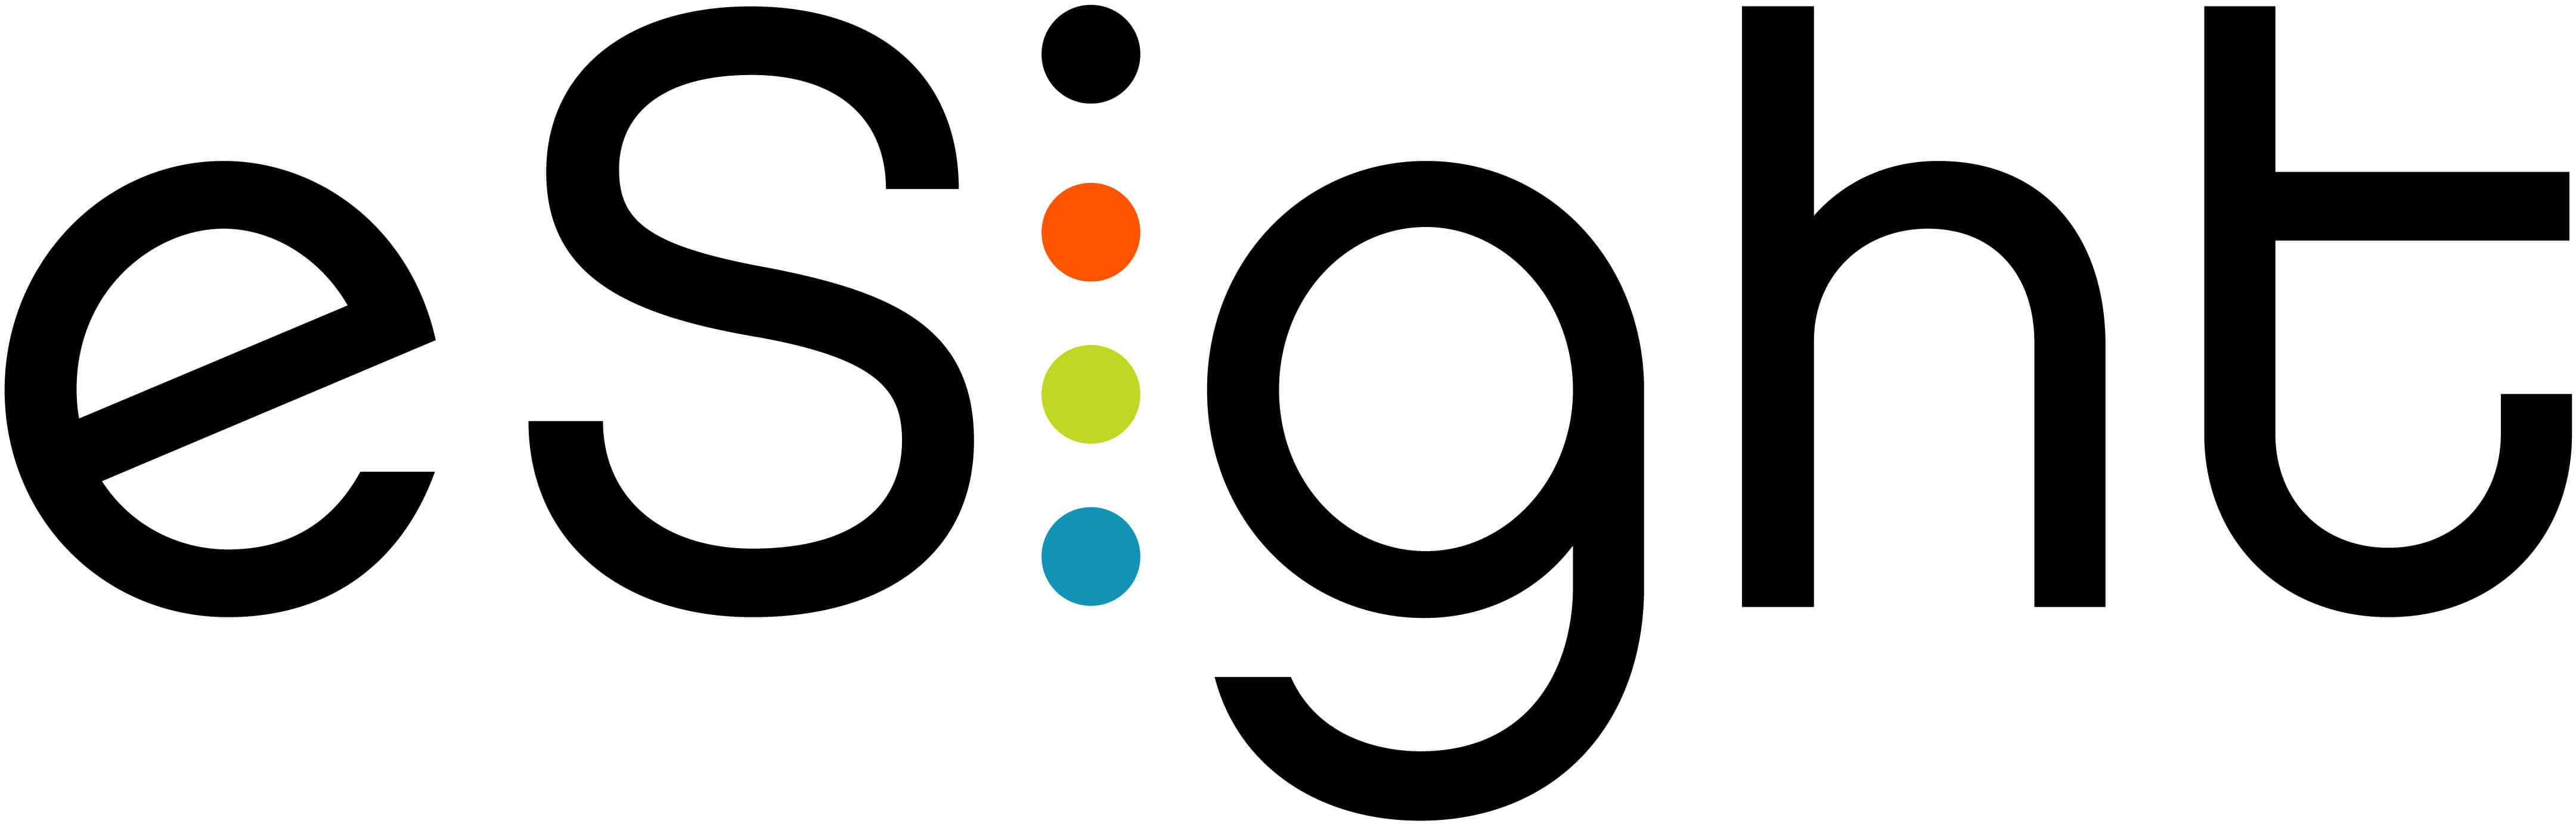 Logo de la marque eSight